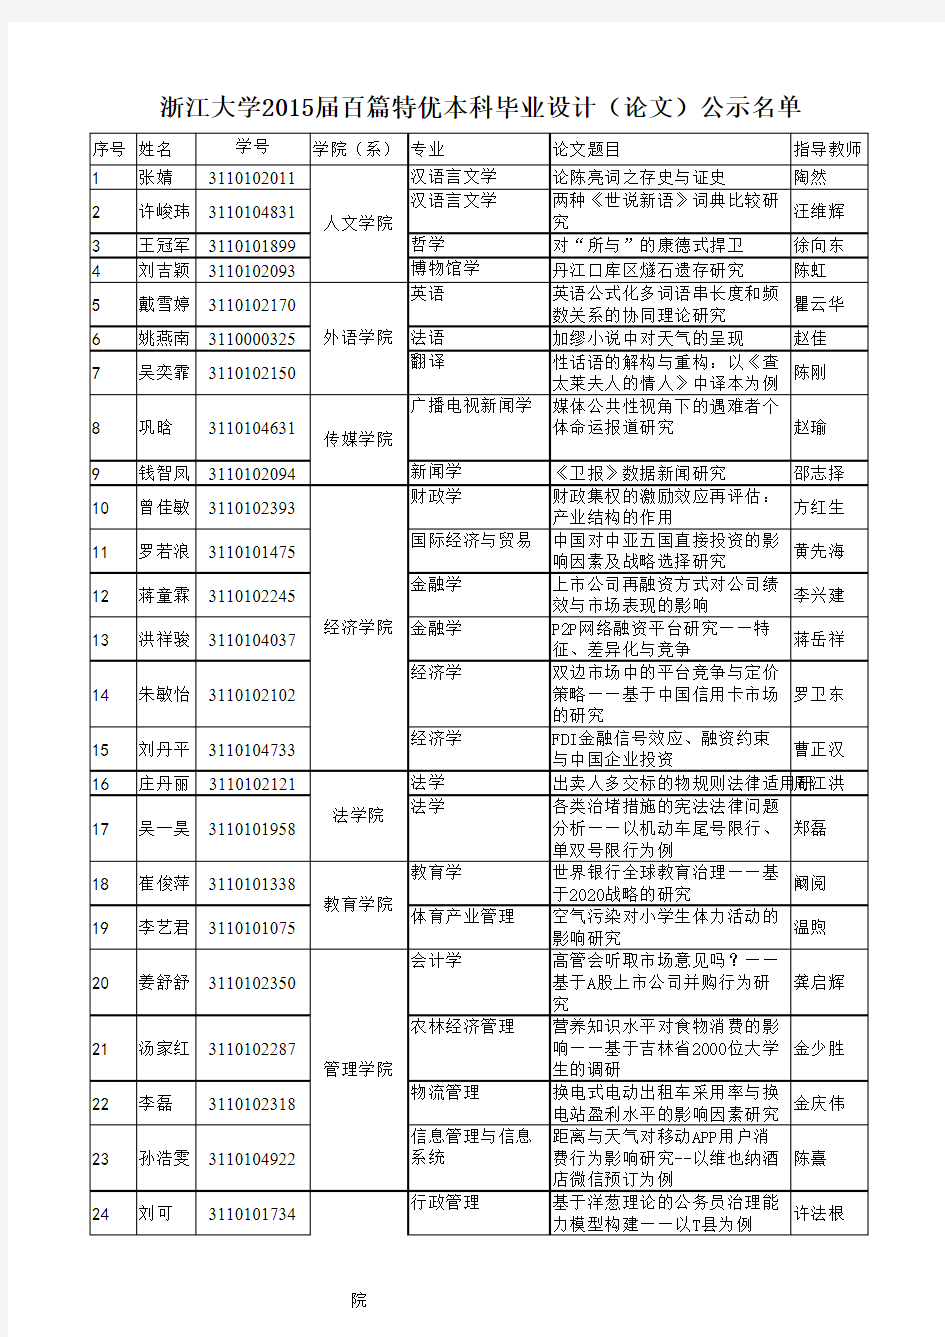 浙江大学2015届百篇特优本科毕业设计(论文)公示名单